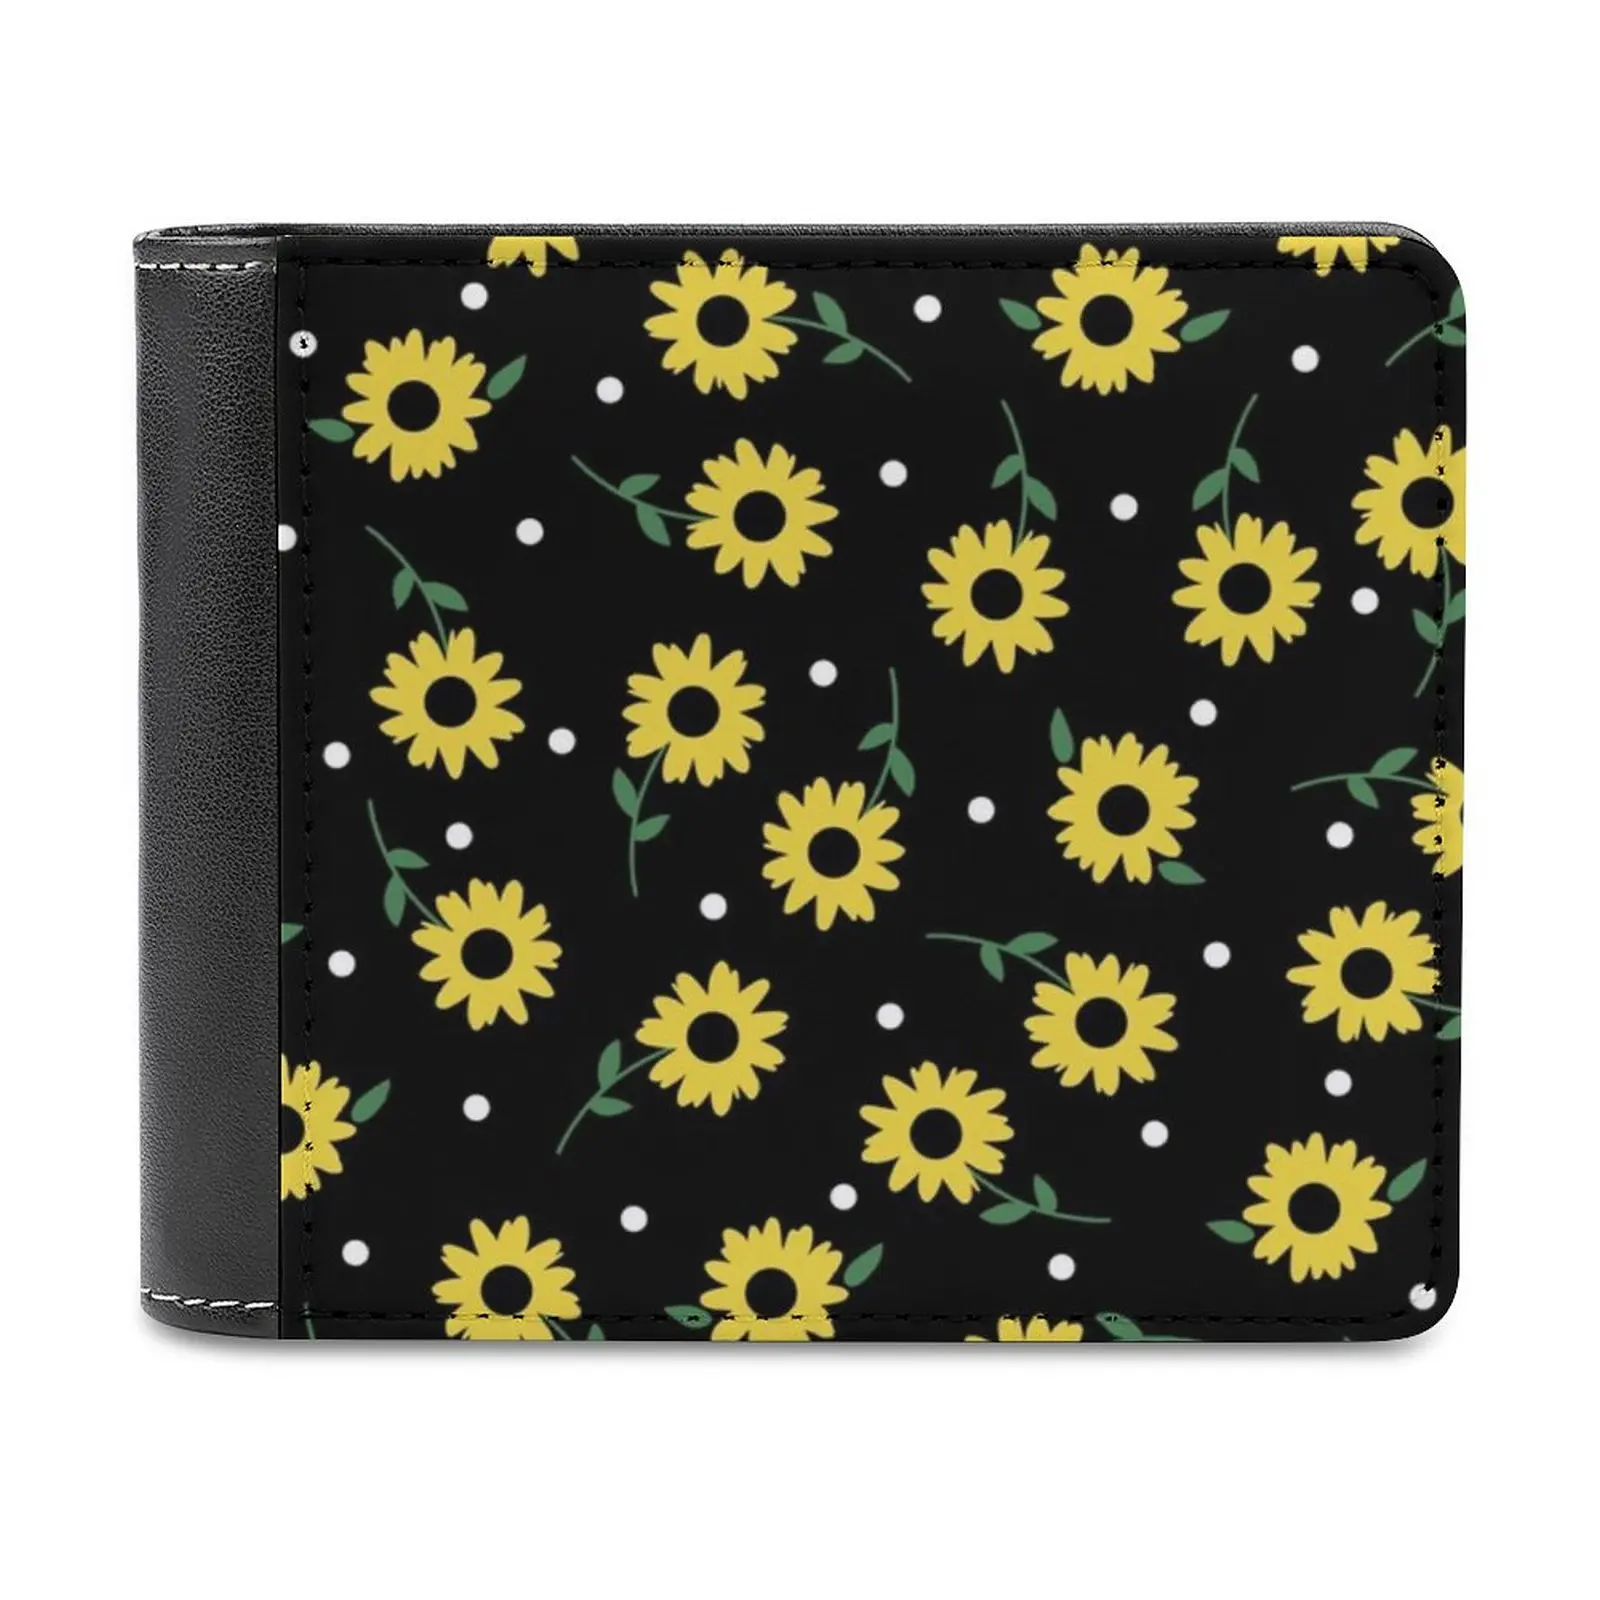 

Кожаные кошельки Sunflower Field, мужской кошелек, держатели для кредитных карт, высококачественный кошелек с подсолнухами и цветочным узором